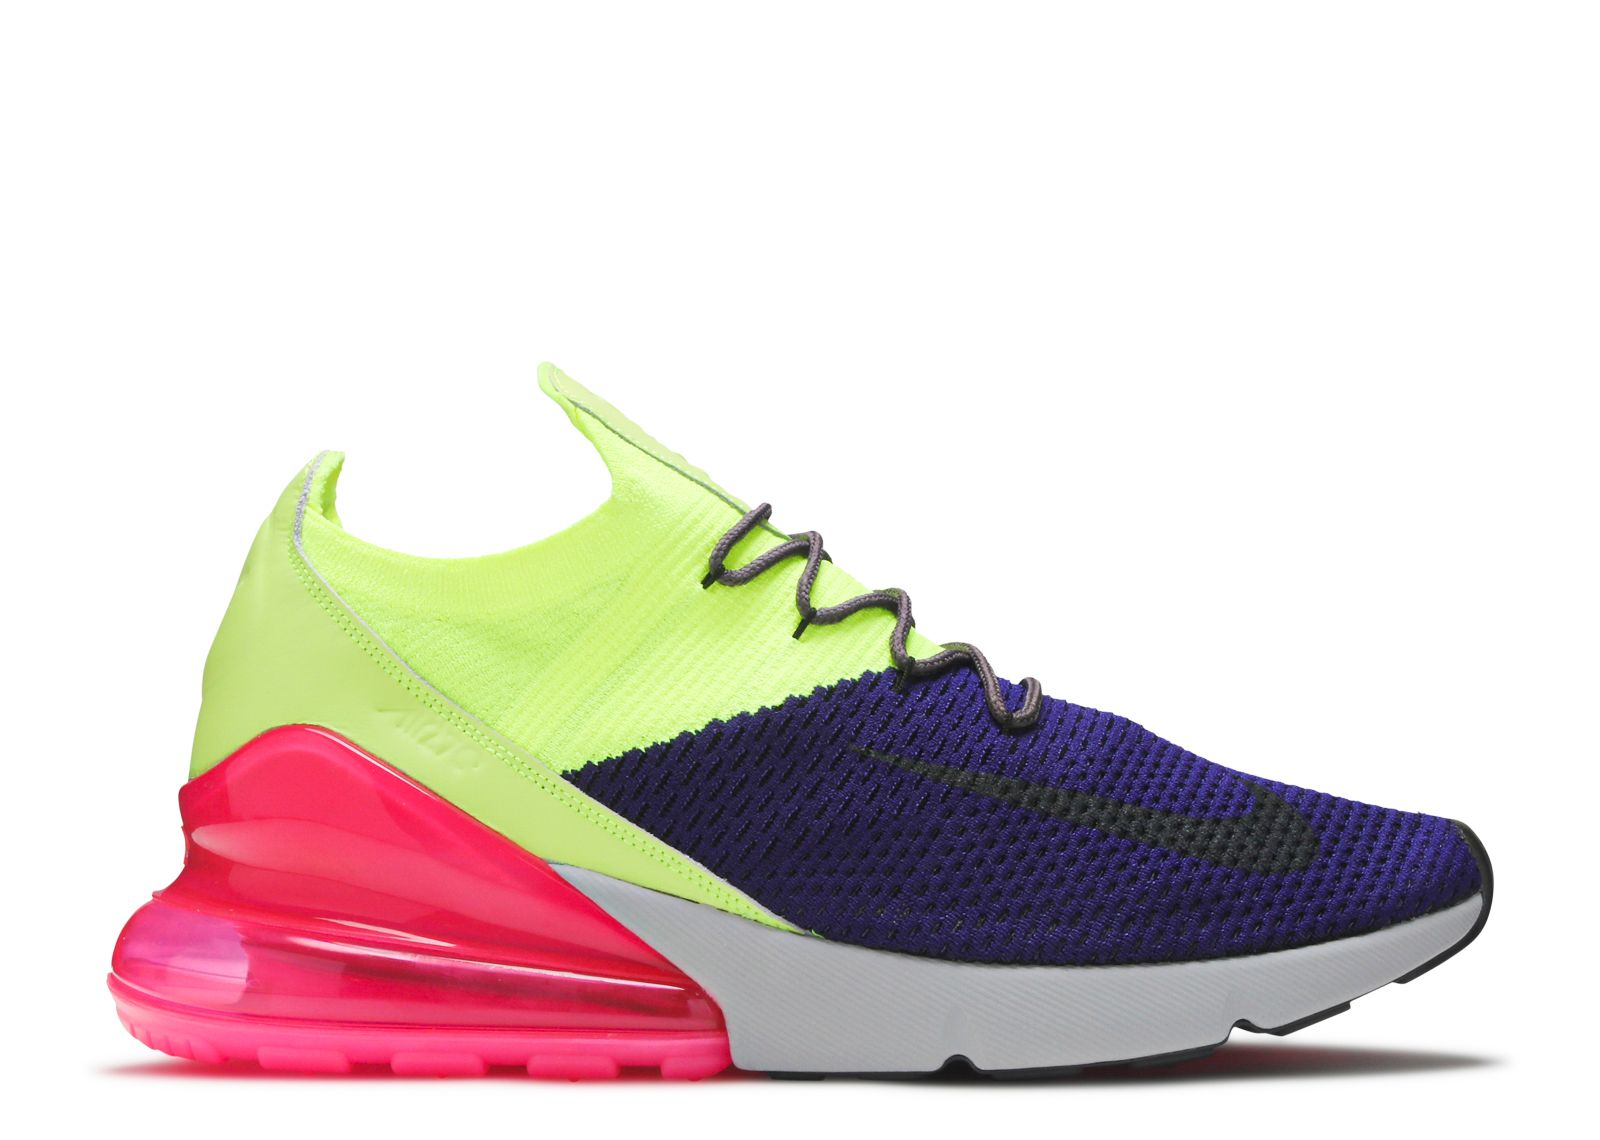 Кроссовки Nike Air Max 270 Flyknit 'Multi-Color', разноцветный кроссовки nike air max 270 react bt multi color разноцветный